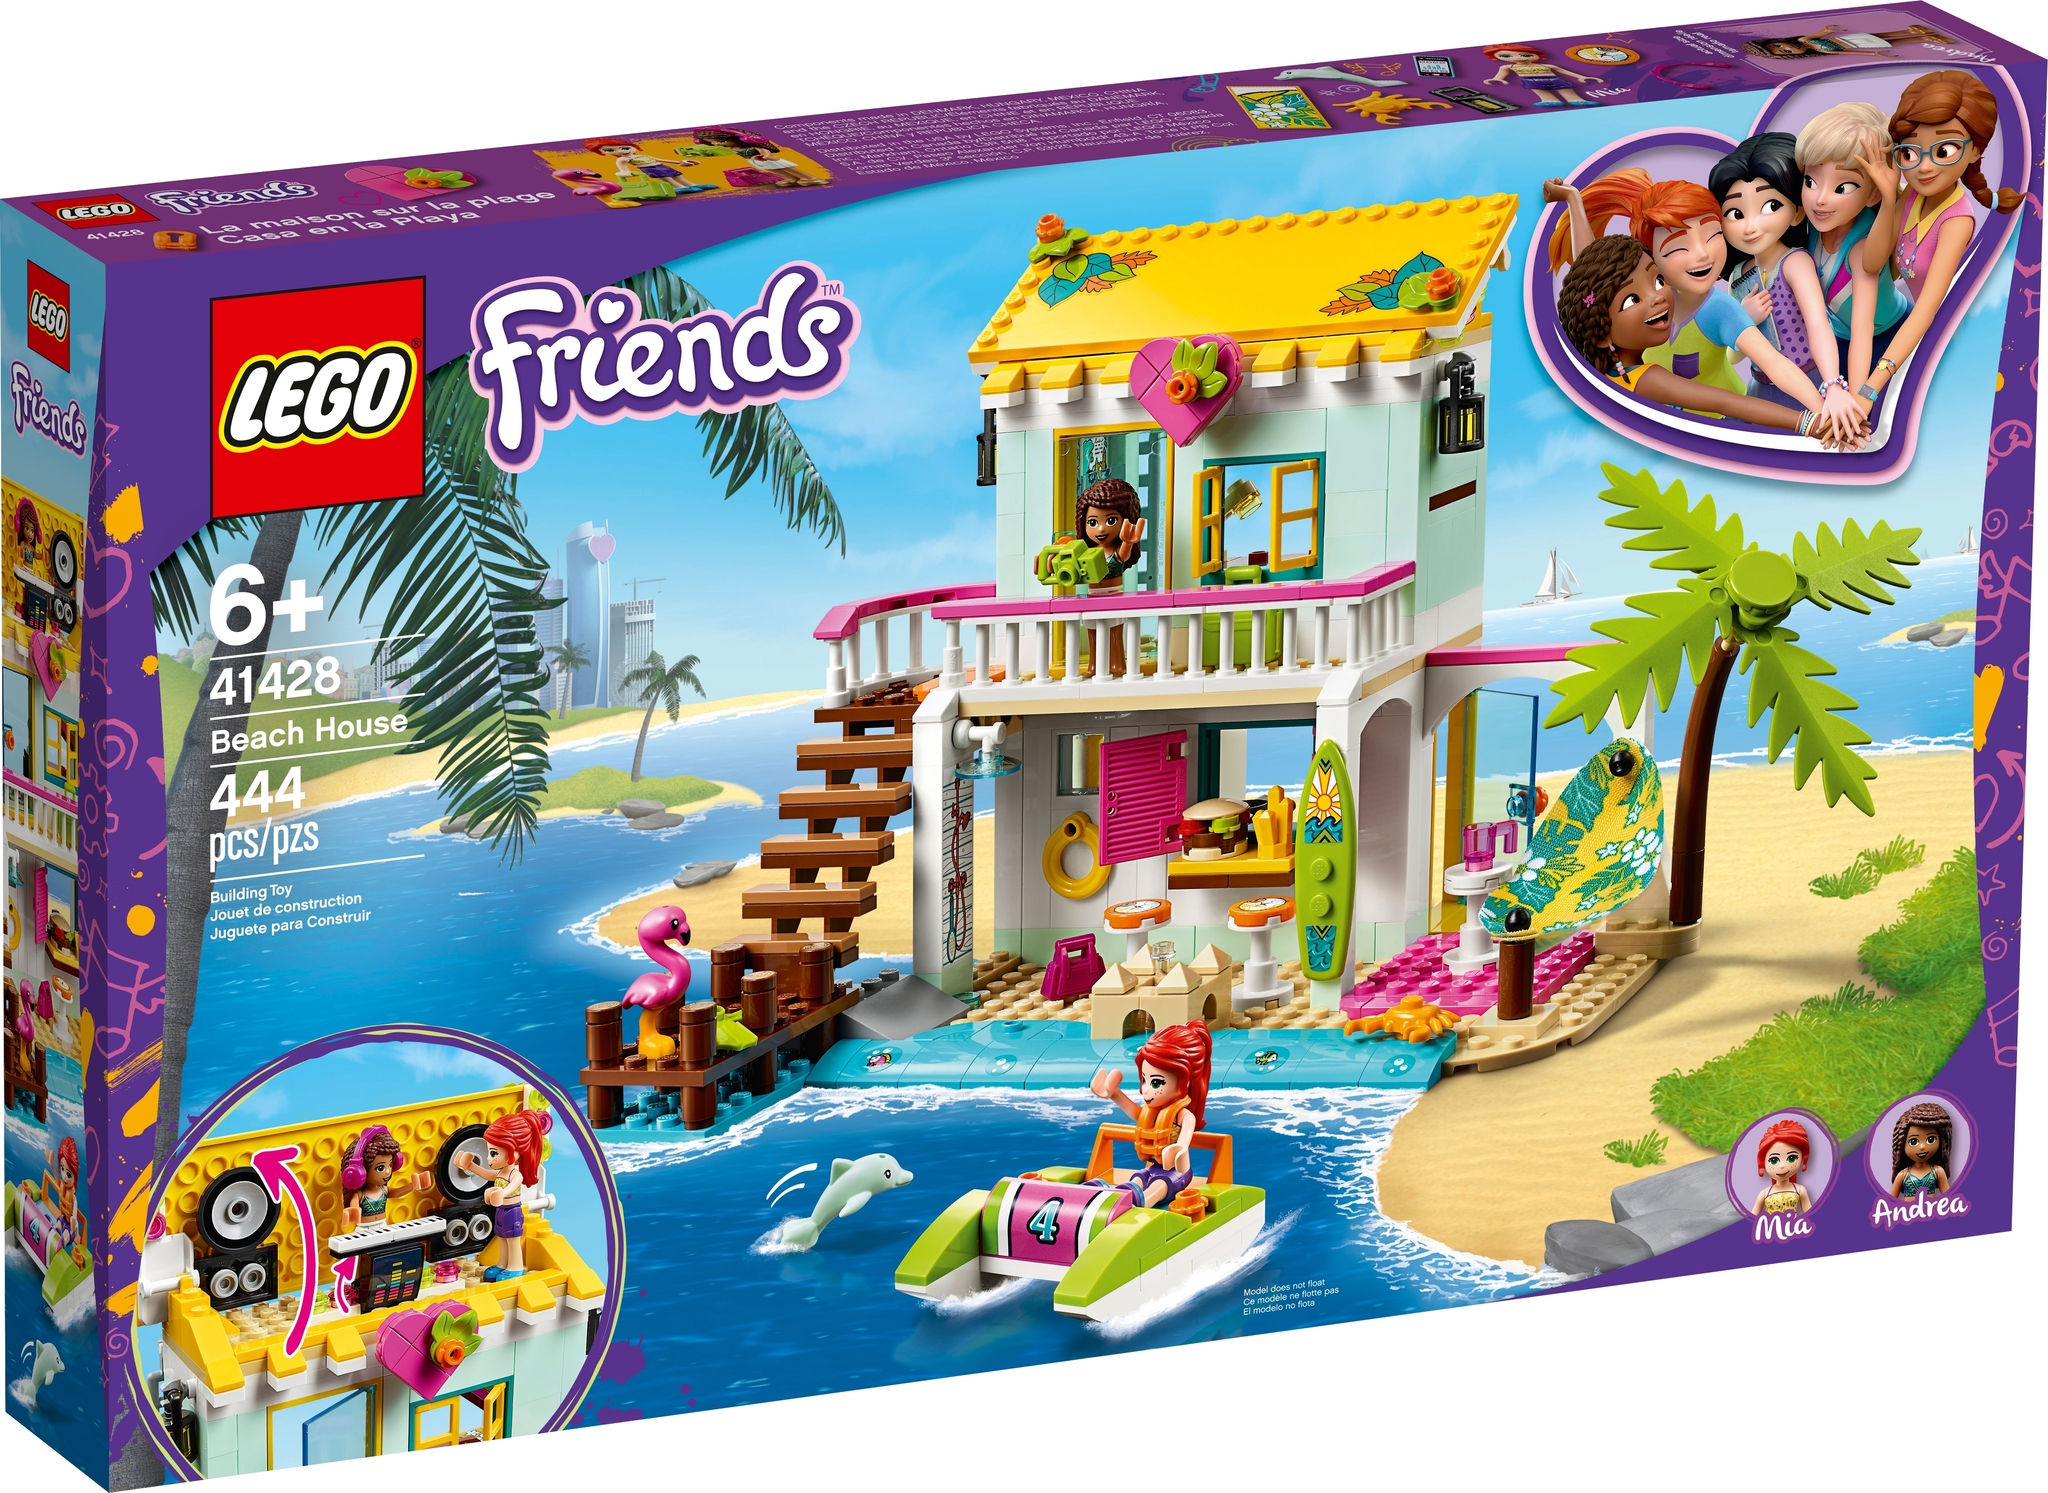 Lego friends 41449 la maison familiale d'andréa jouet avec maison